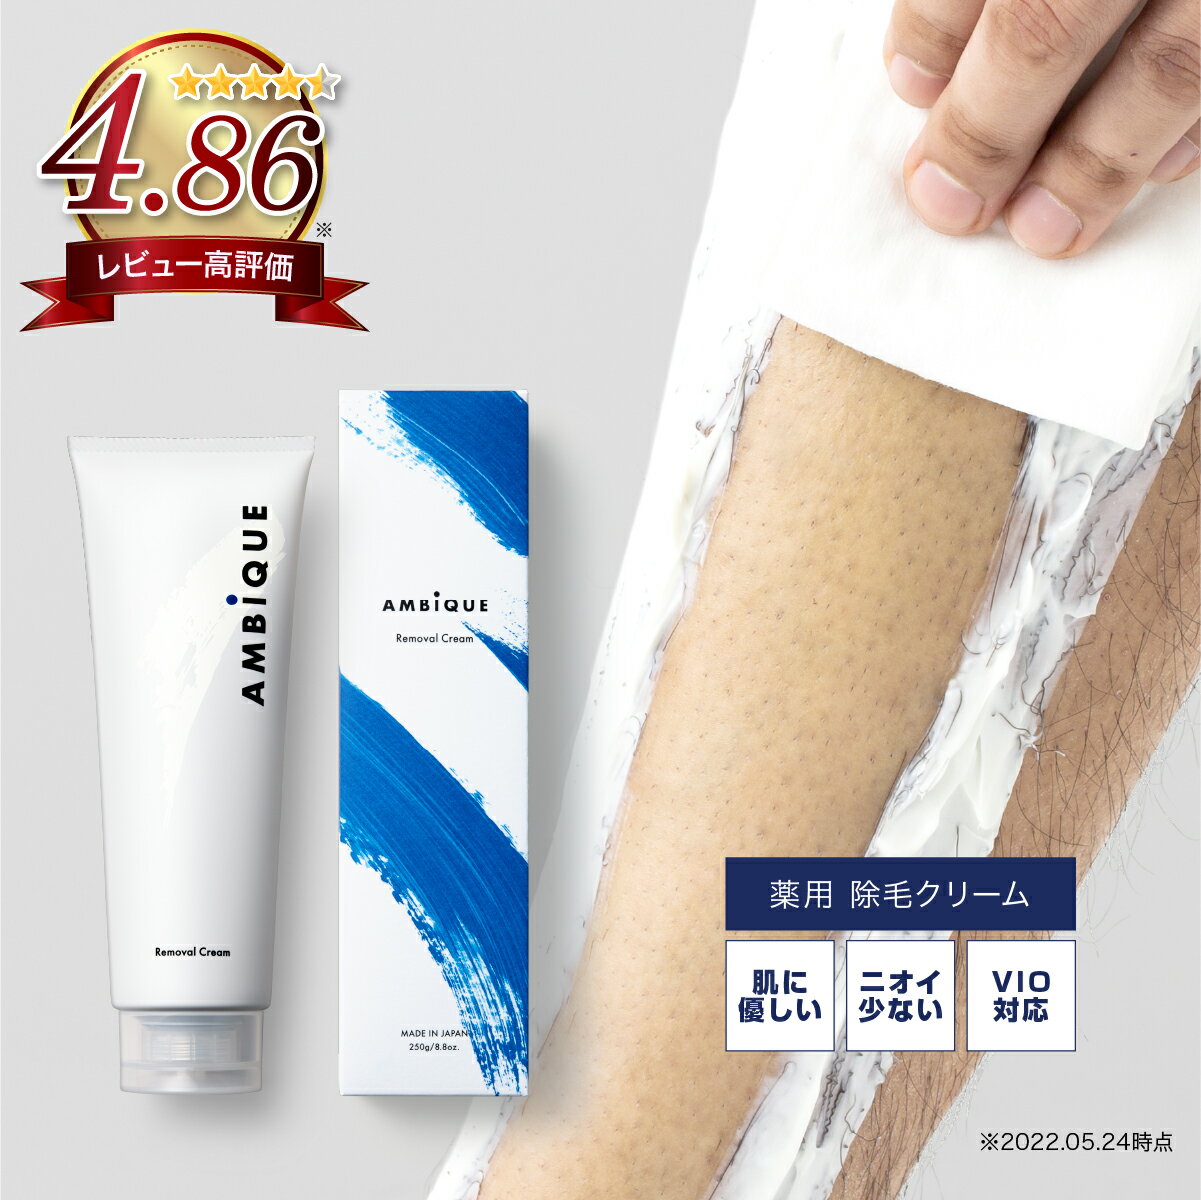 【脱毛ワックス】ピュアシュガーワックス (Pure Sugar Wax) 500g ×2個セット - お肌に優しい素材で作られています